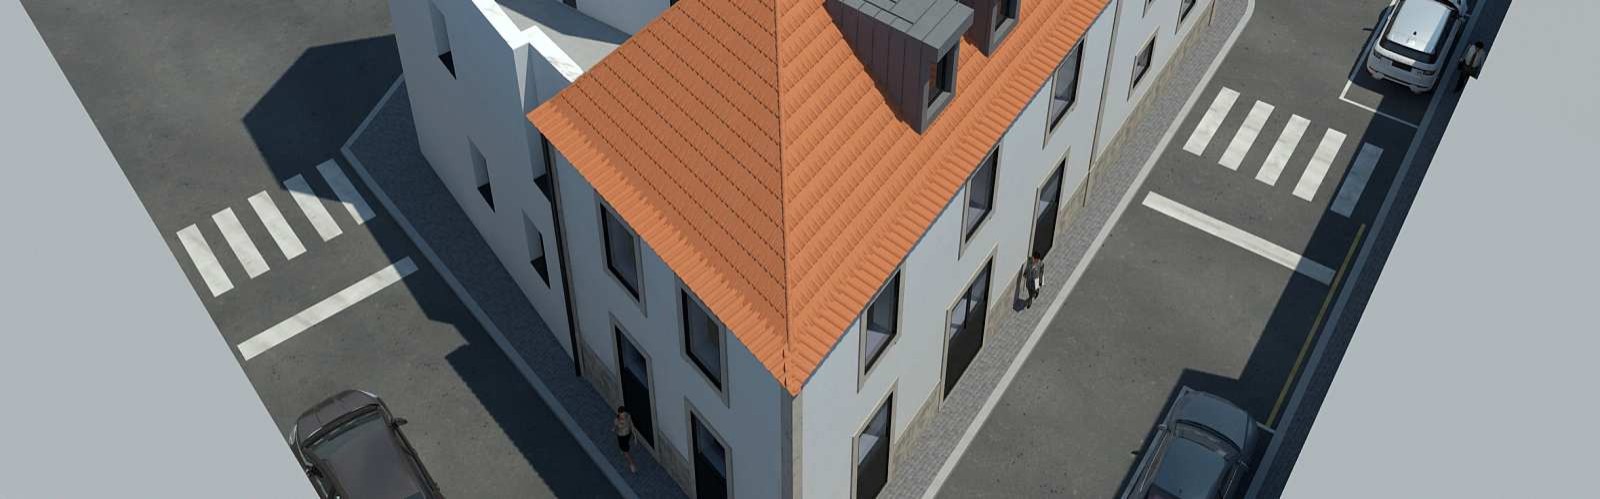 Vendo: Edificio con proyecto aprobado, para reformar, en el Centro de Vila Nova de Gaia, Oporto, Portugal_214628